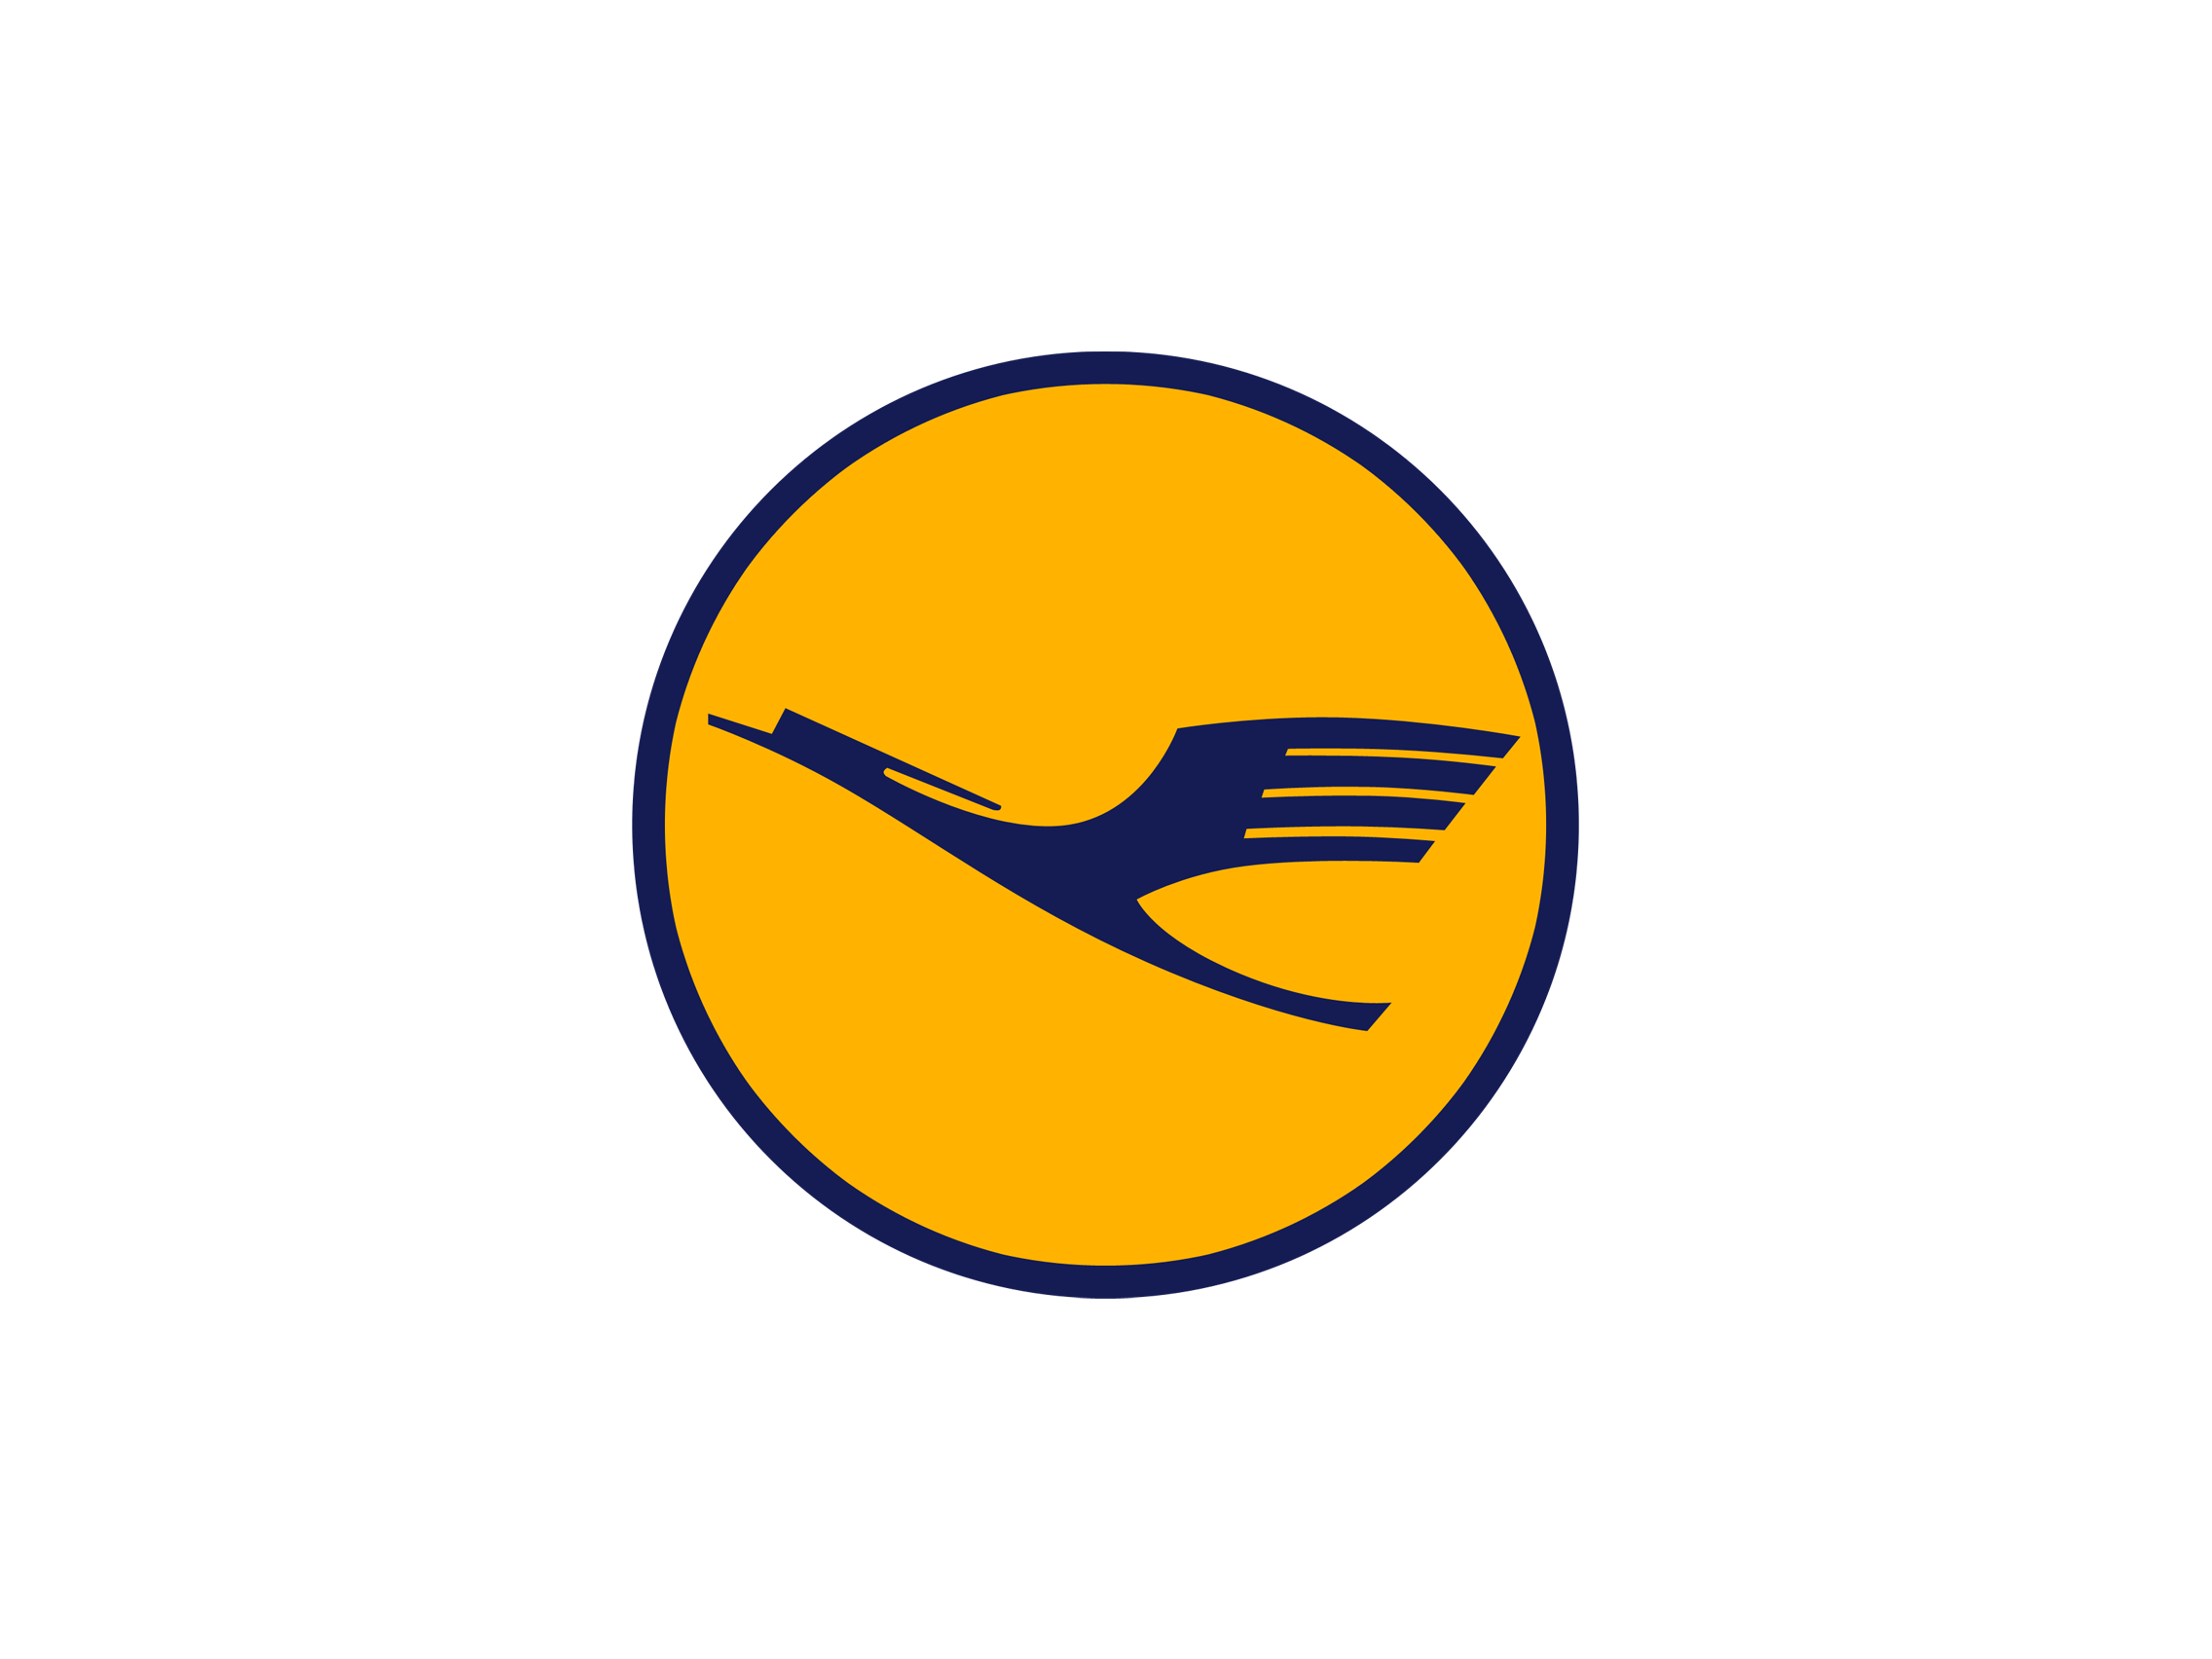 Orange Bird in Circle Logo - Yellow Bird Studios Logo Image - Free Logo Png